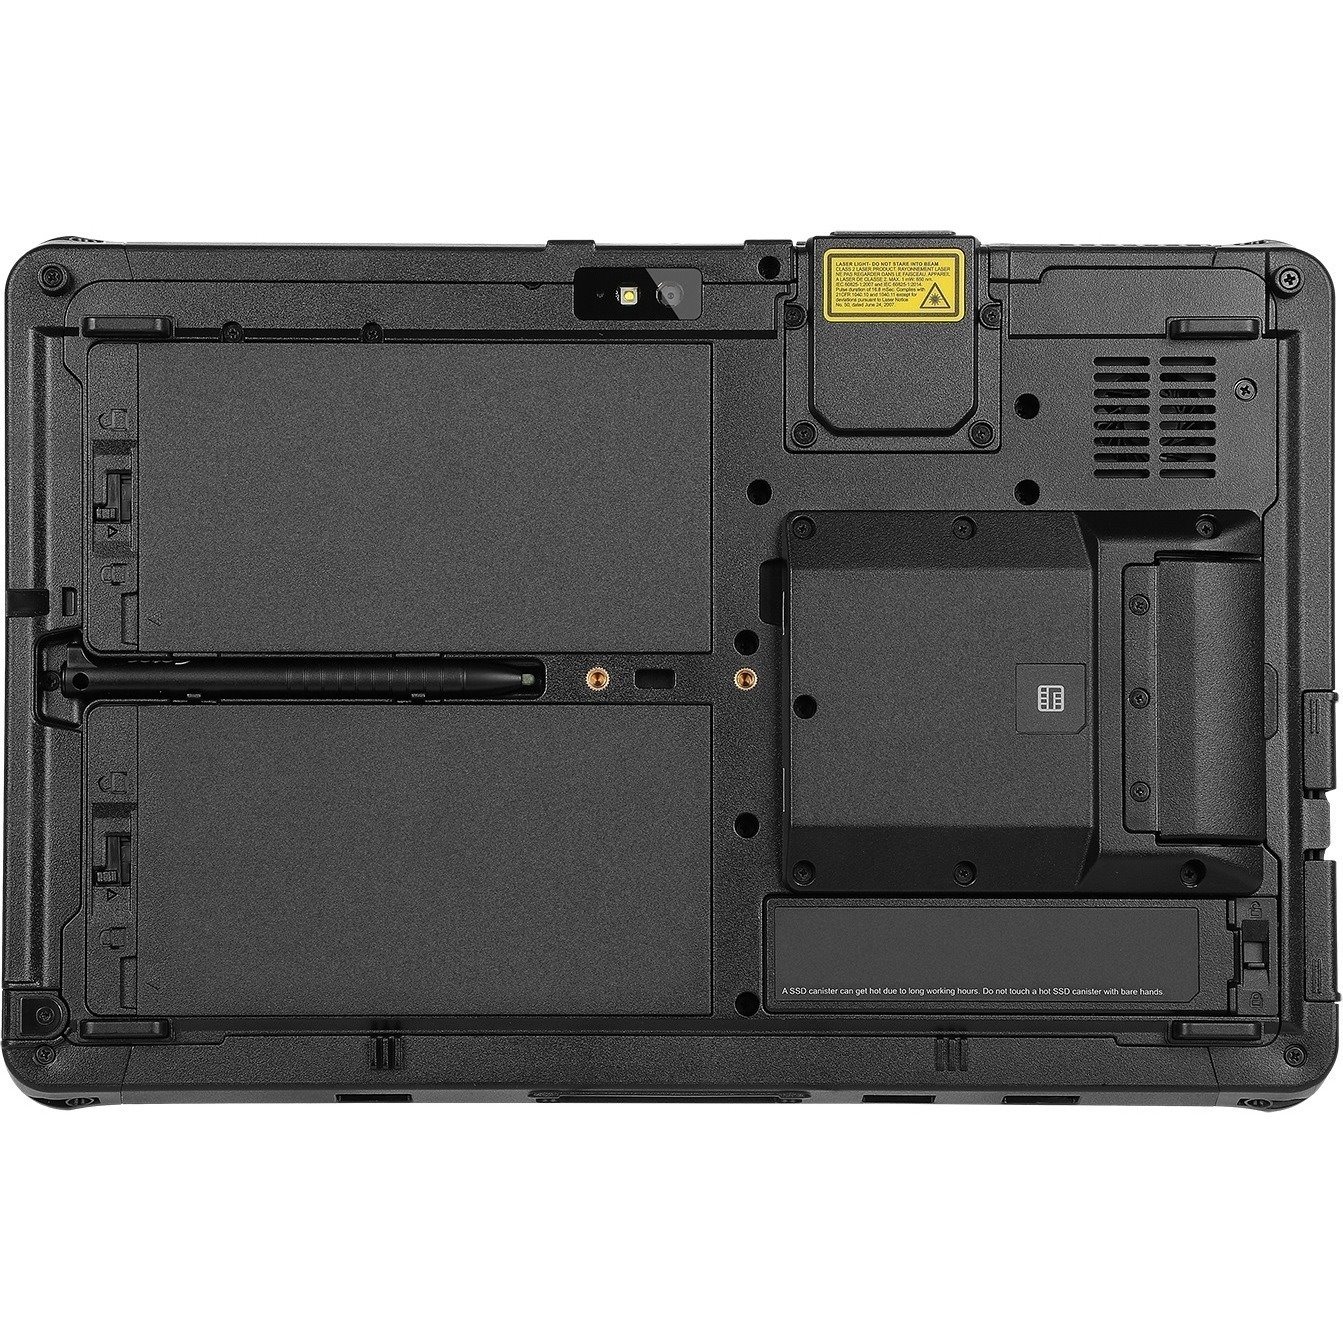 Getac F110 Rugged Tablet - 11.6" Full HD - 16 GB - 256 GB SSD - Windows 11 Pro 64-bit - 4G